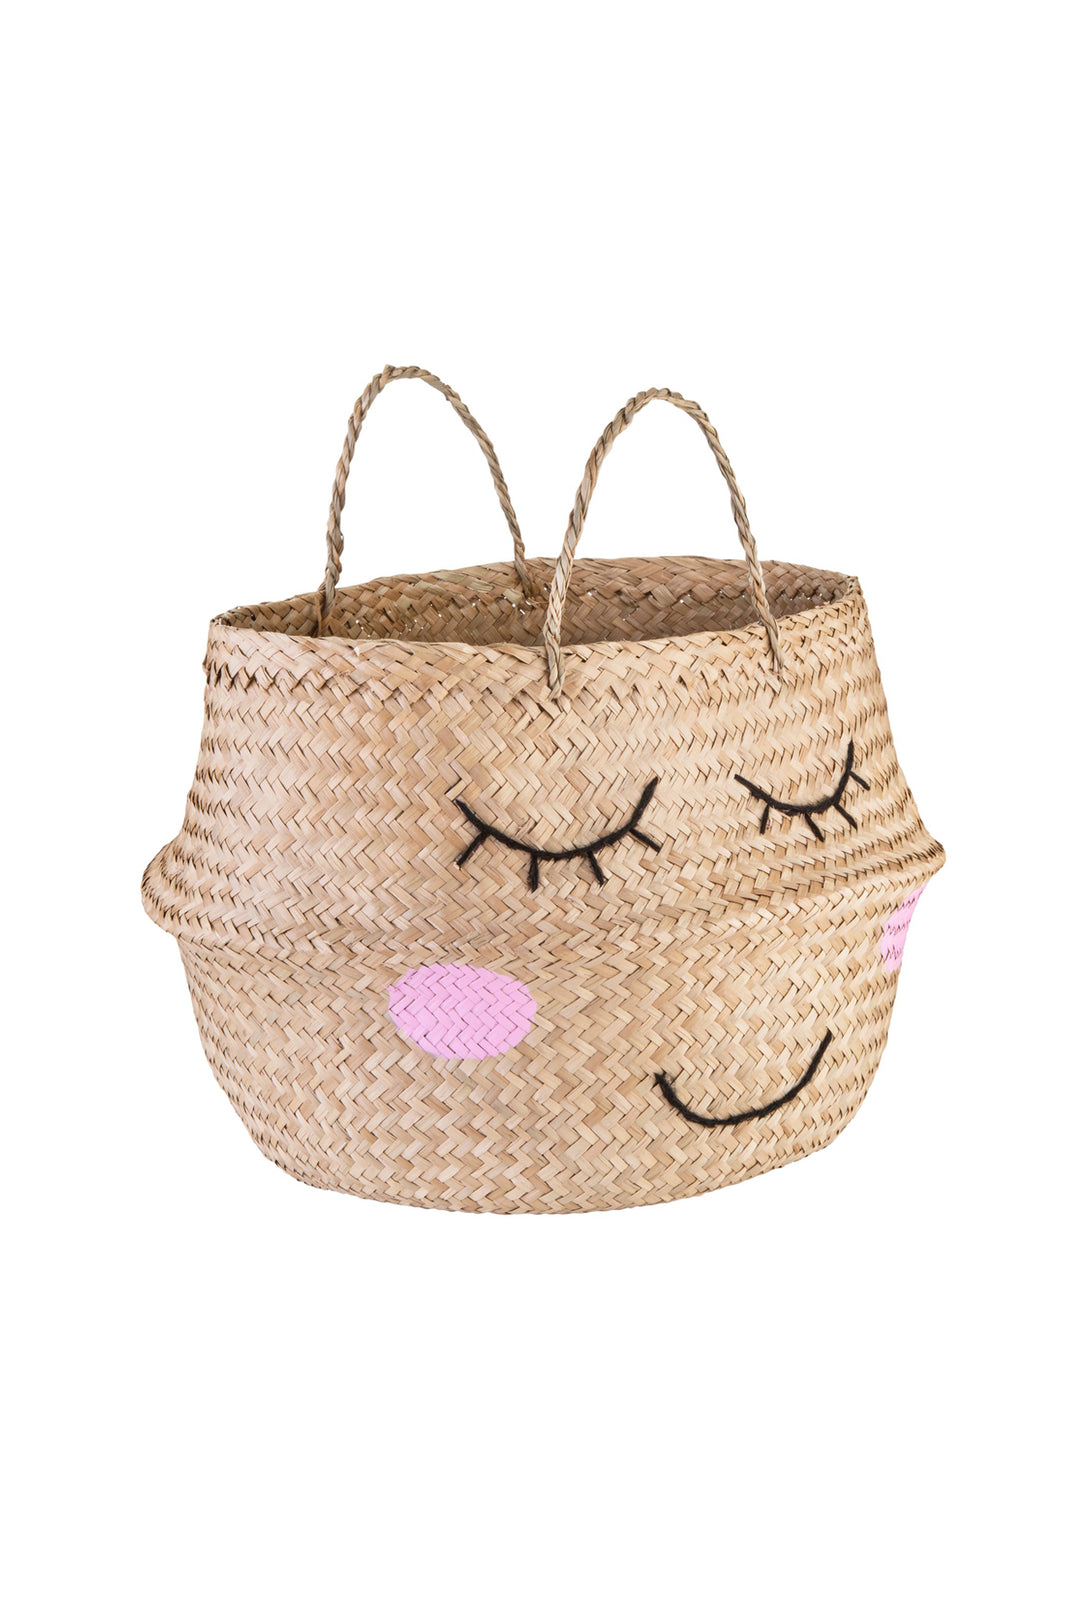 Seagrass Sweet Dreams Storage Basket, Storage, Sass & Belle - 3LittlePicks